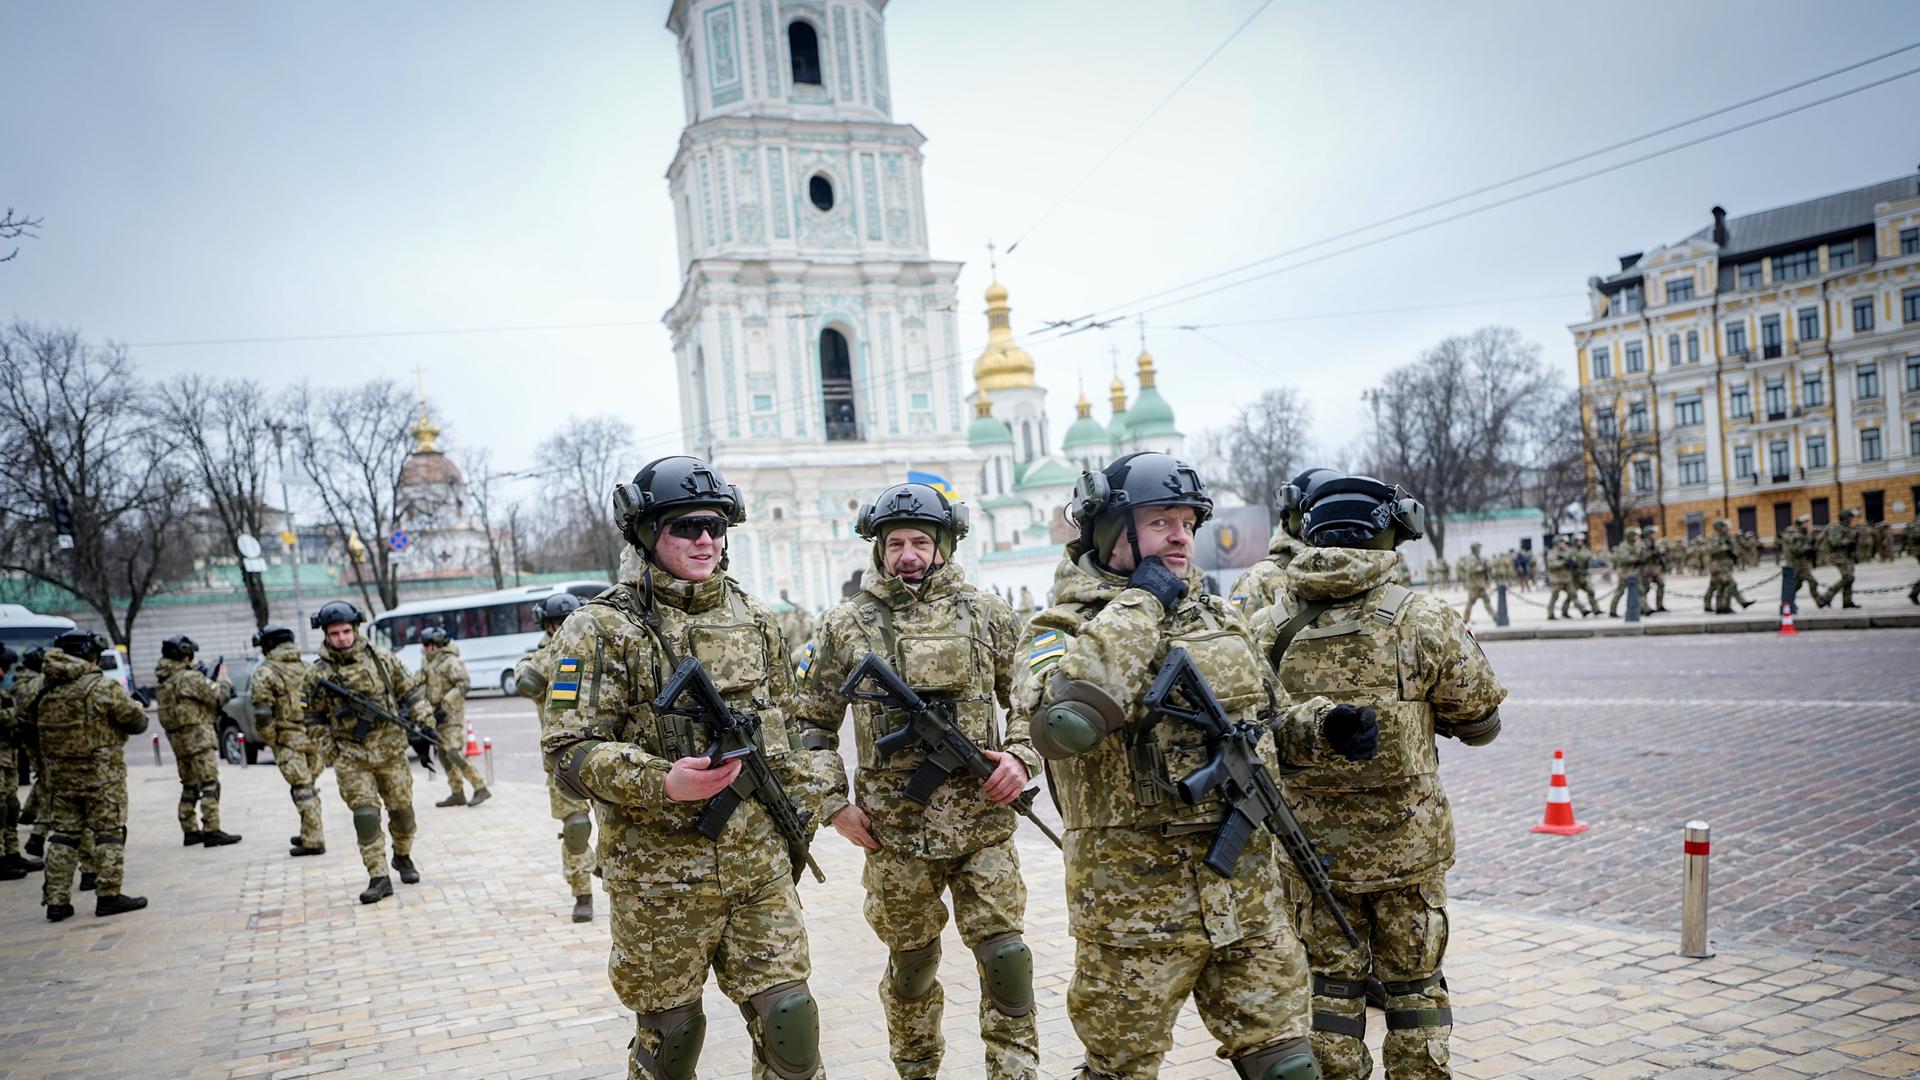 Ukrainische Soldaten verlassen die Militärparade vor der Sophienkathedrale. Die russische Armee hatte die Ukraine am 24.02.2022 überfallen.